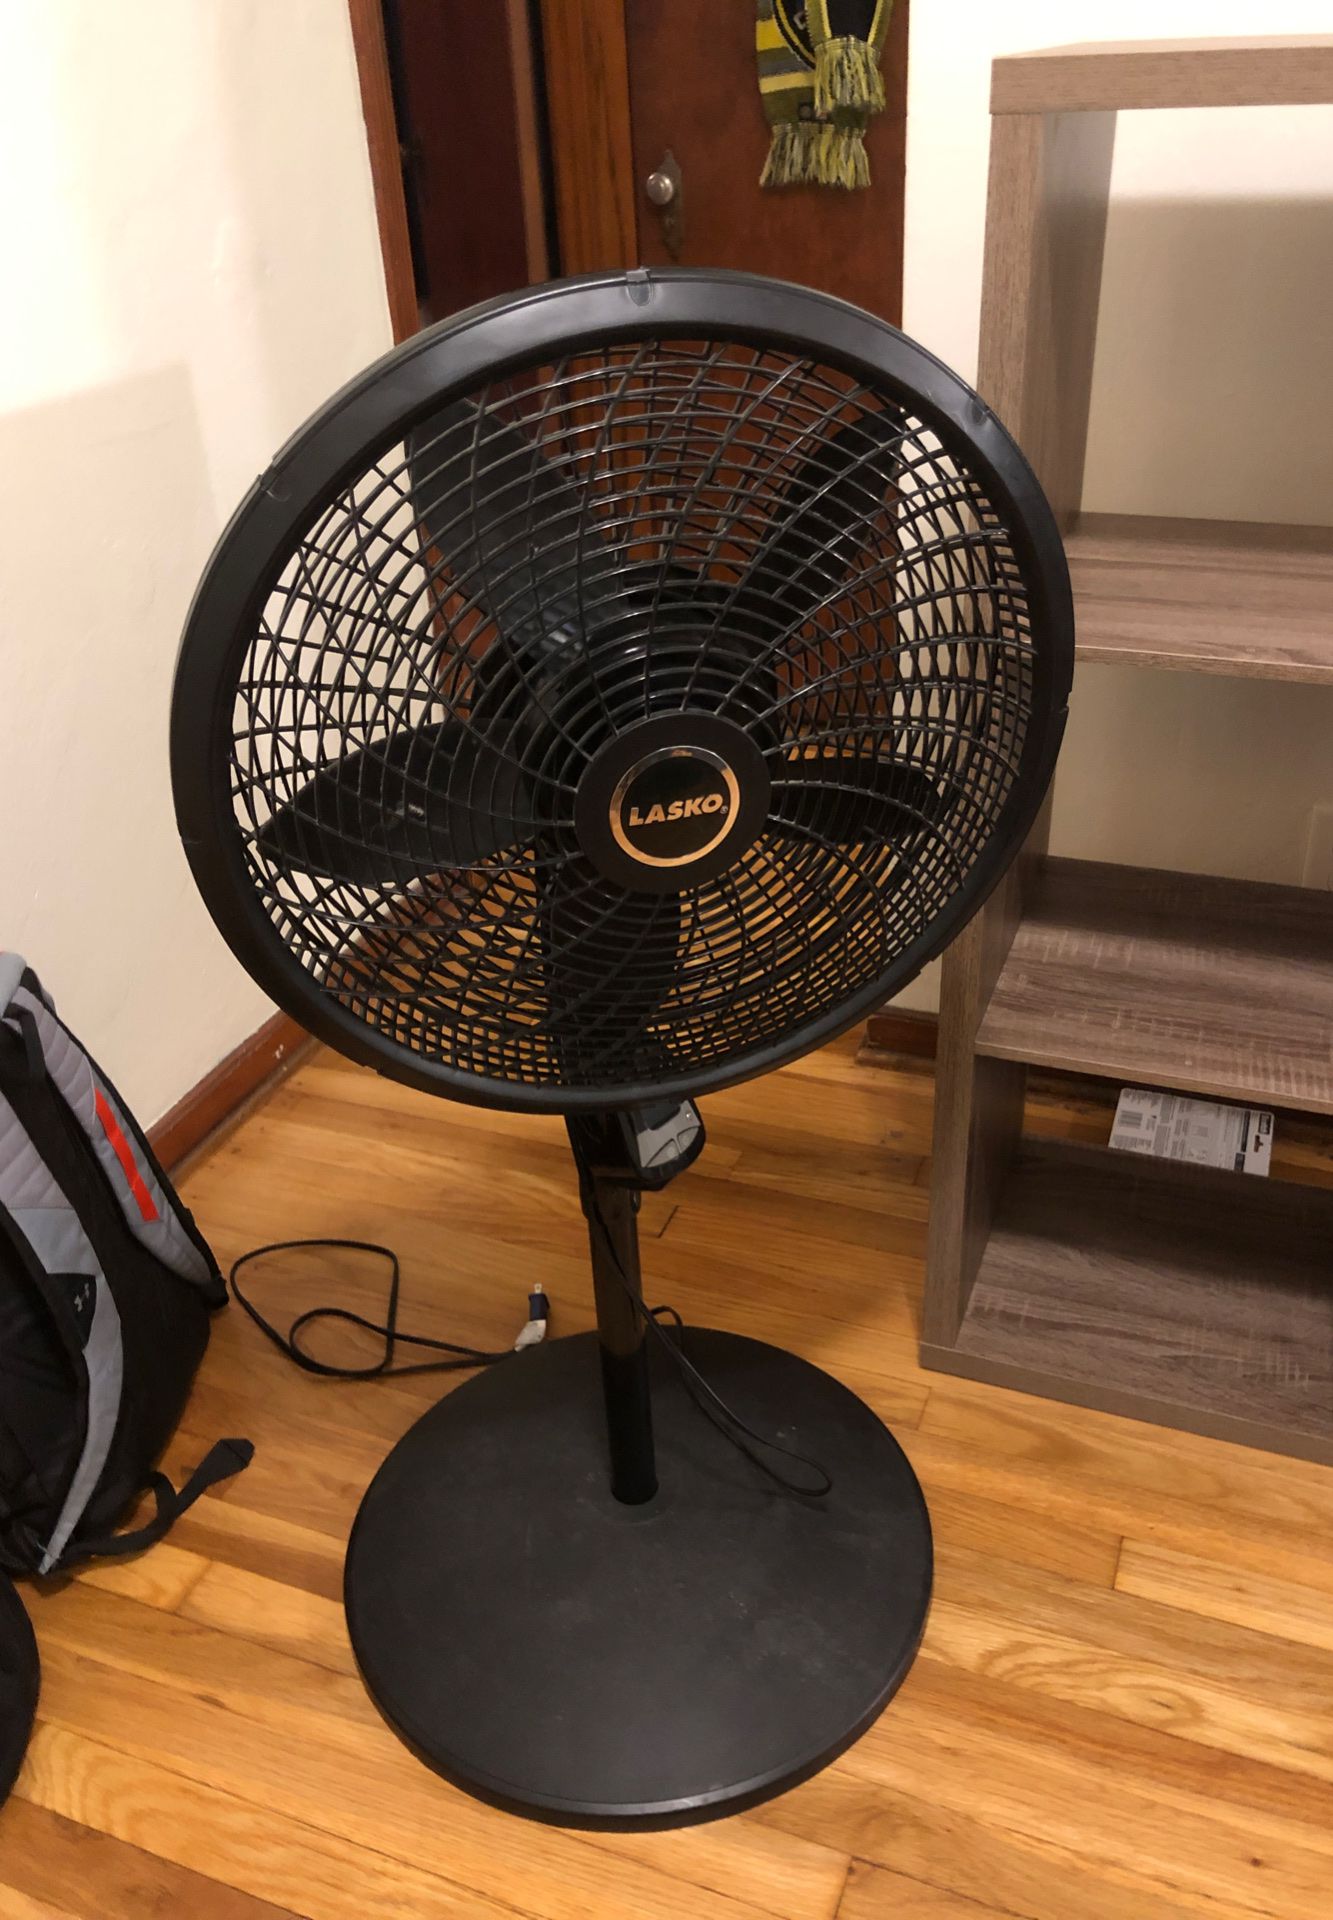 Adjustable, oscillating fan